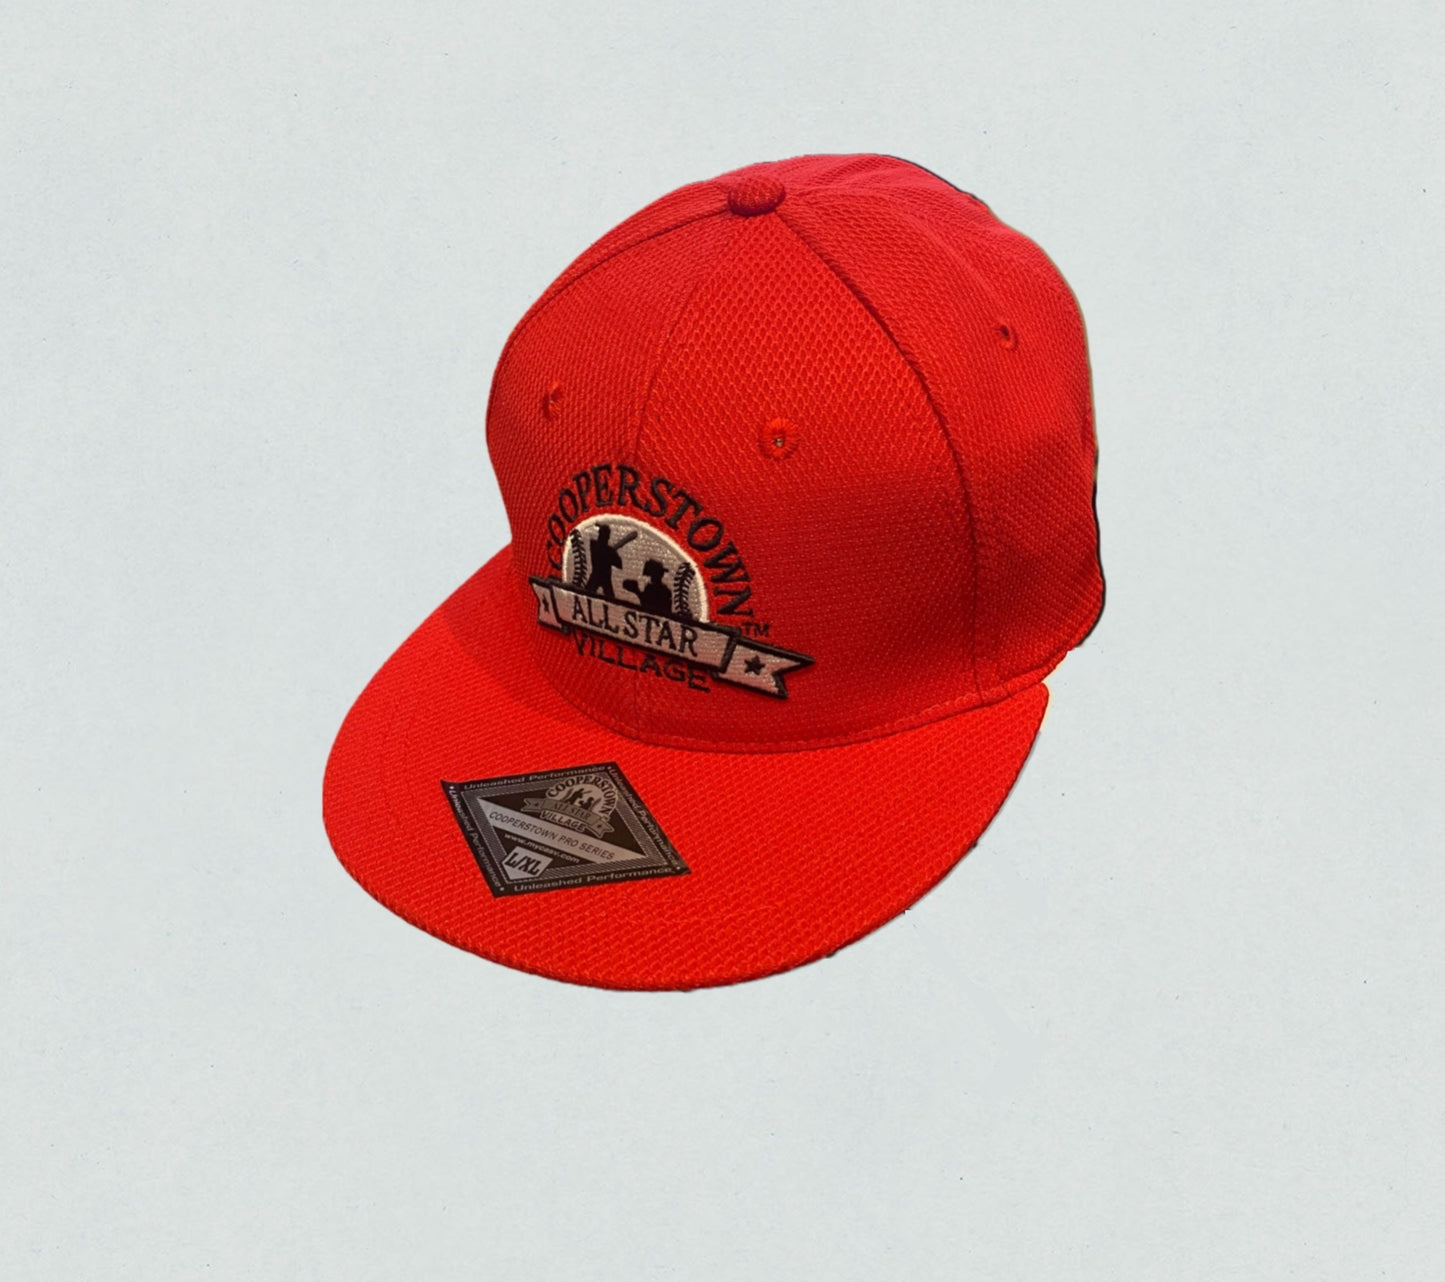 St. Louis Red Custom Fit Baseball Cap